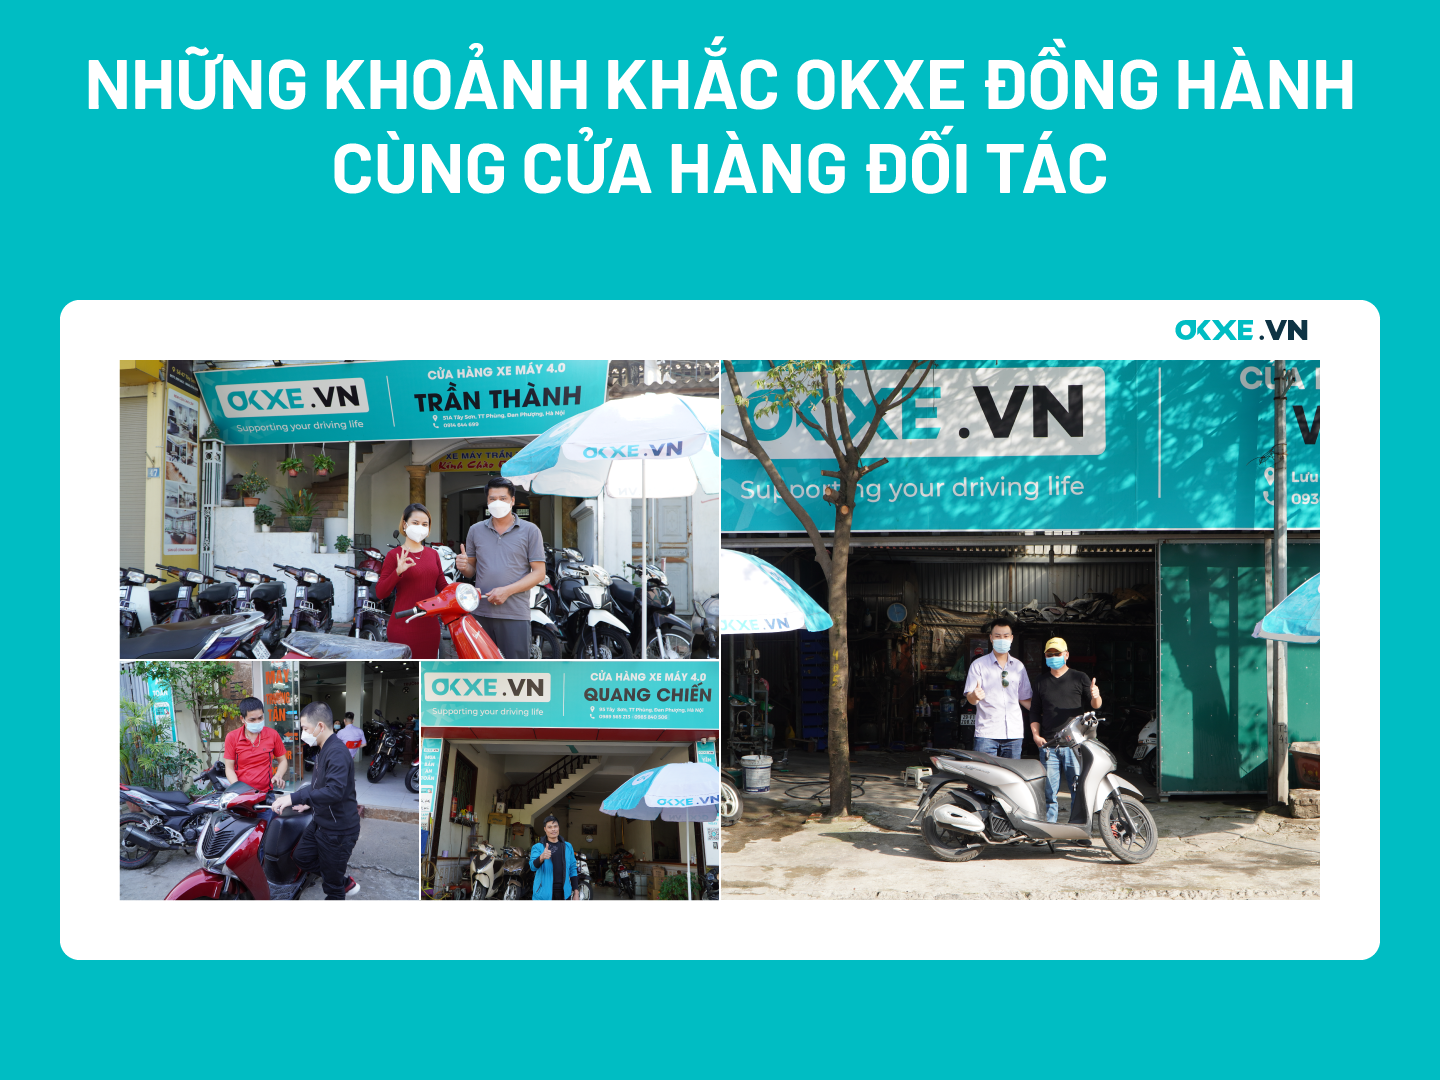 OKXE triển khai dịch vụ mua bán xe máy cũ tại Hà Nội và TPHCM